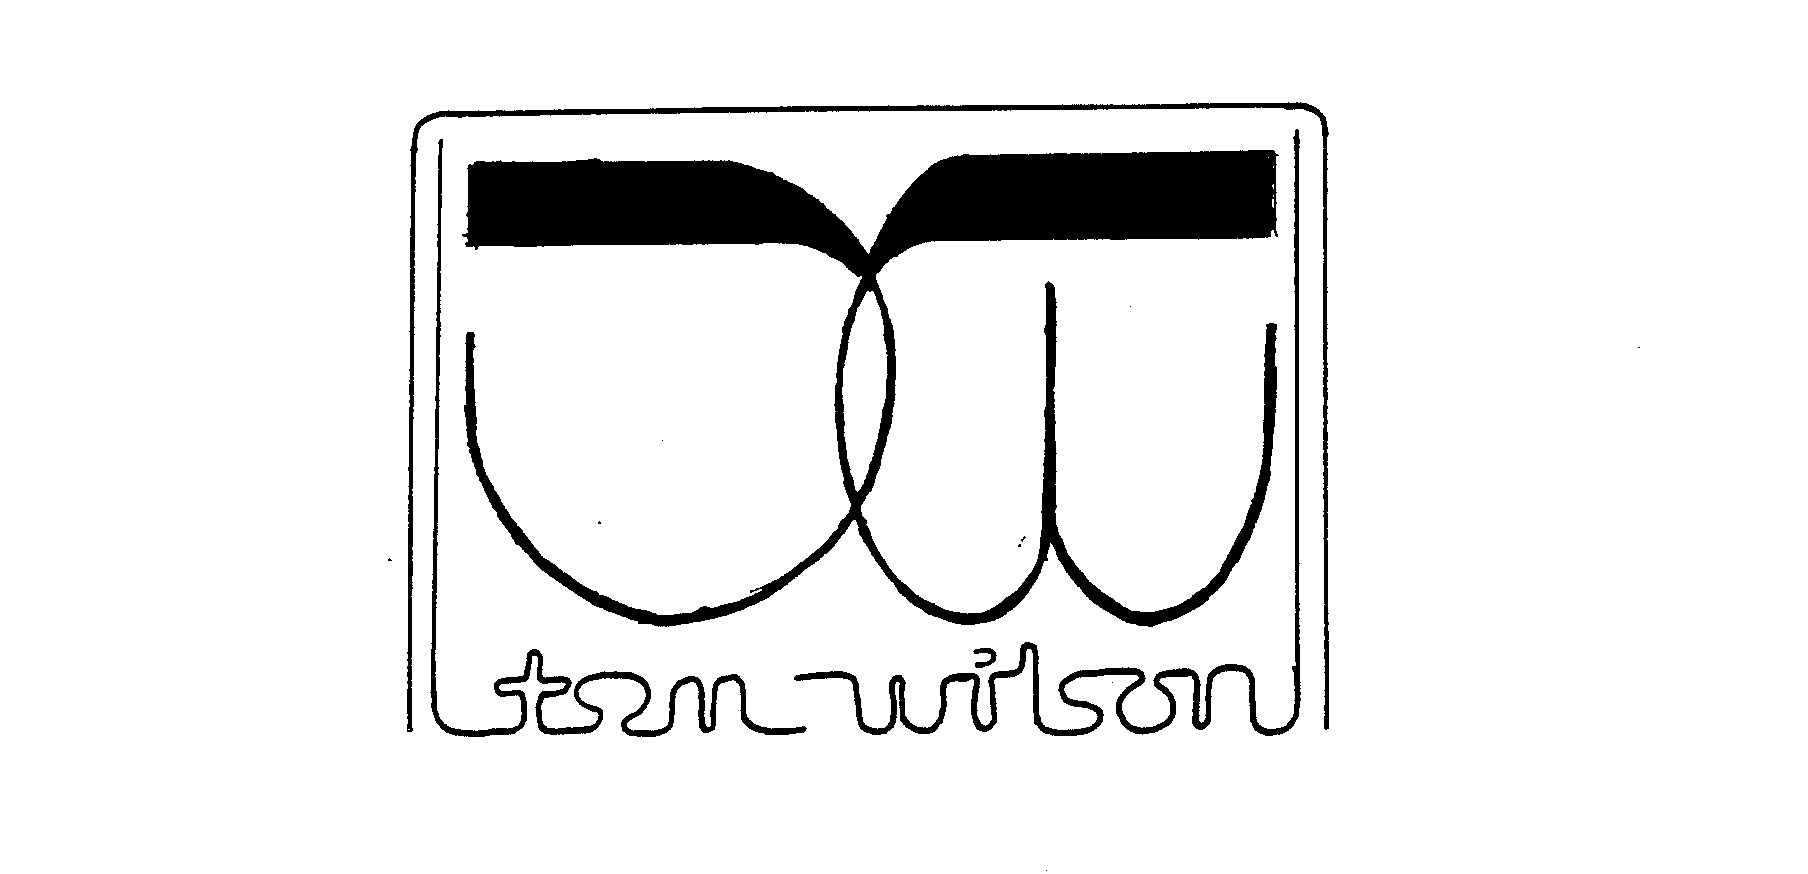  TOM WILSON TW